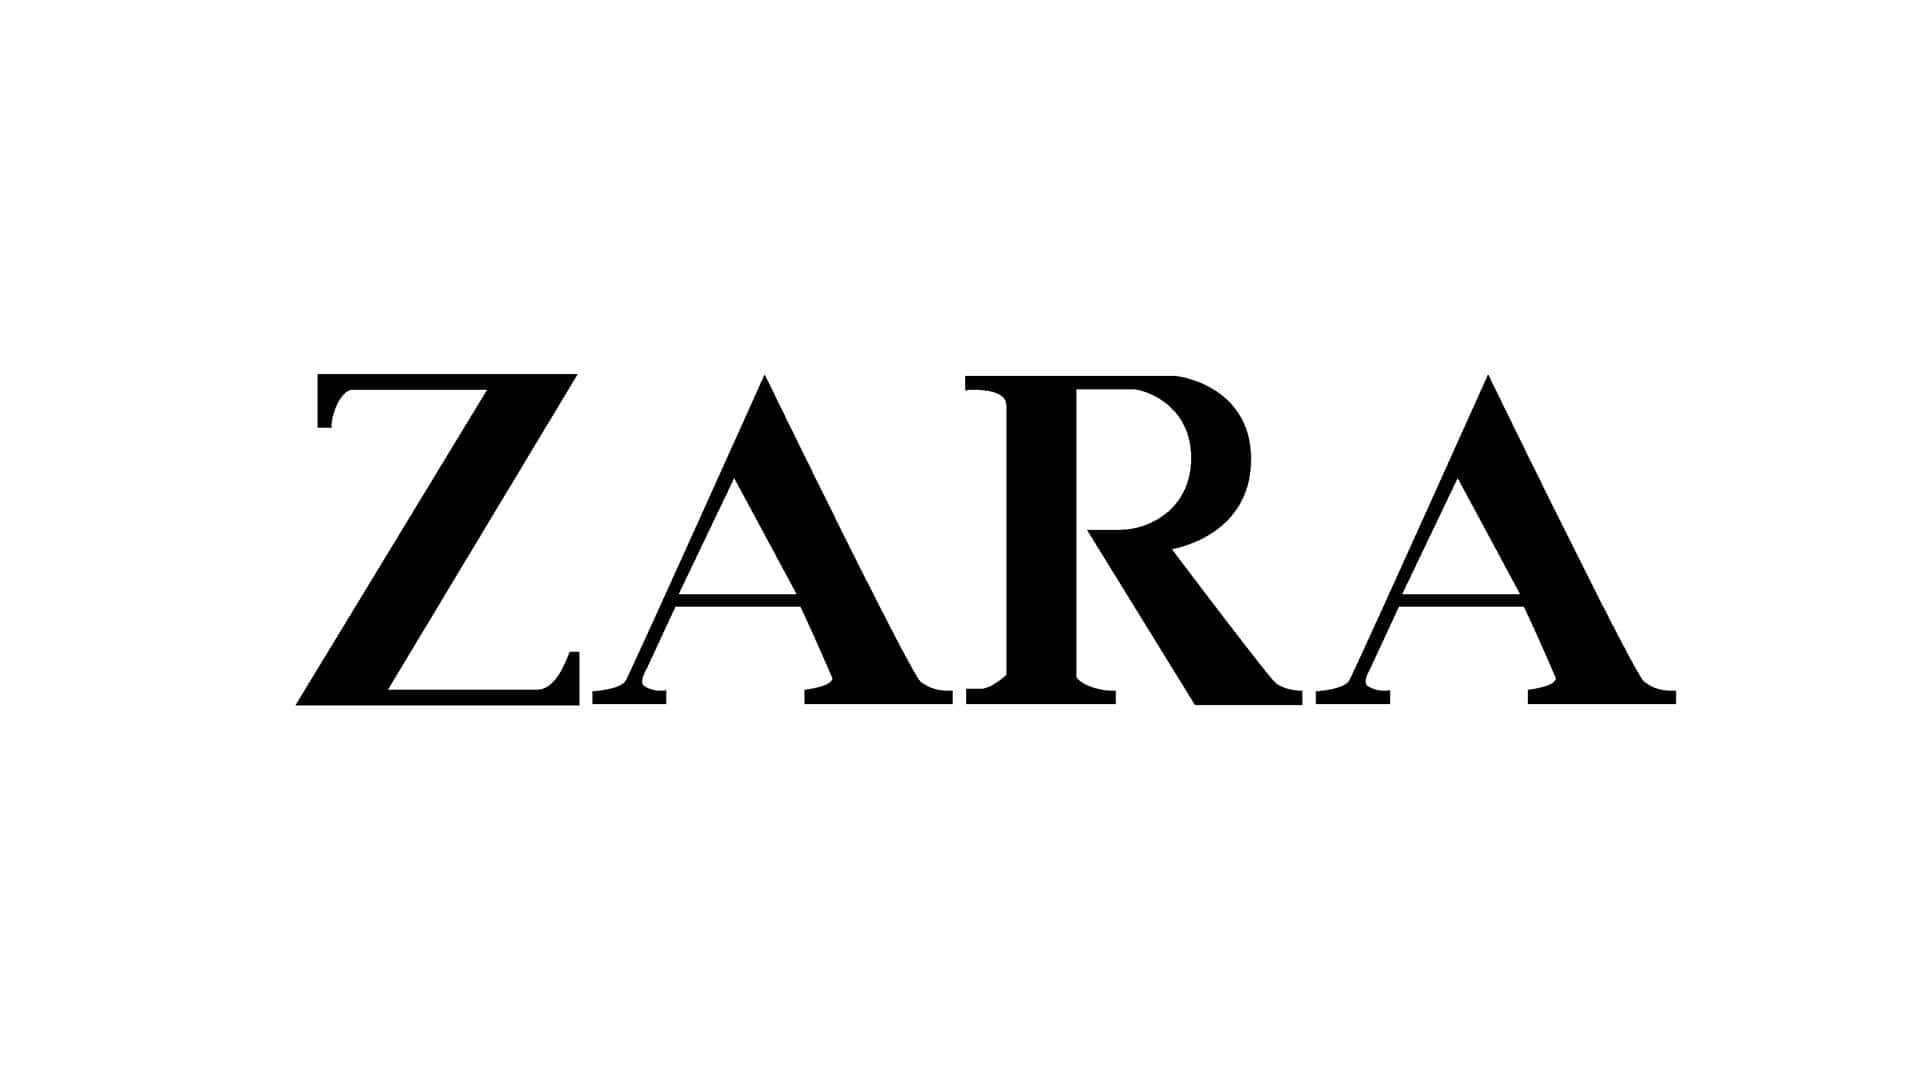 Download Zara Background | Wallpapers.com